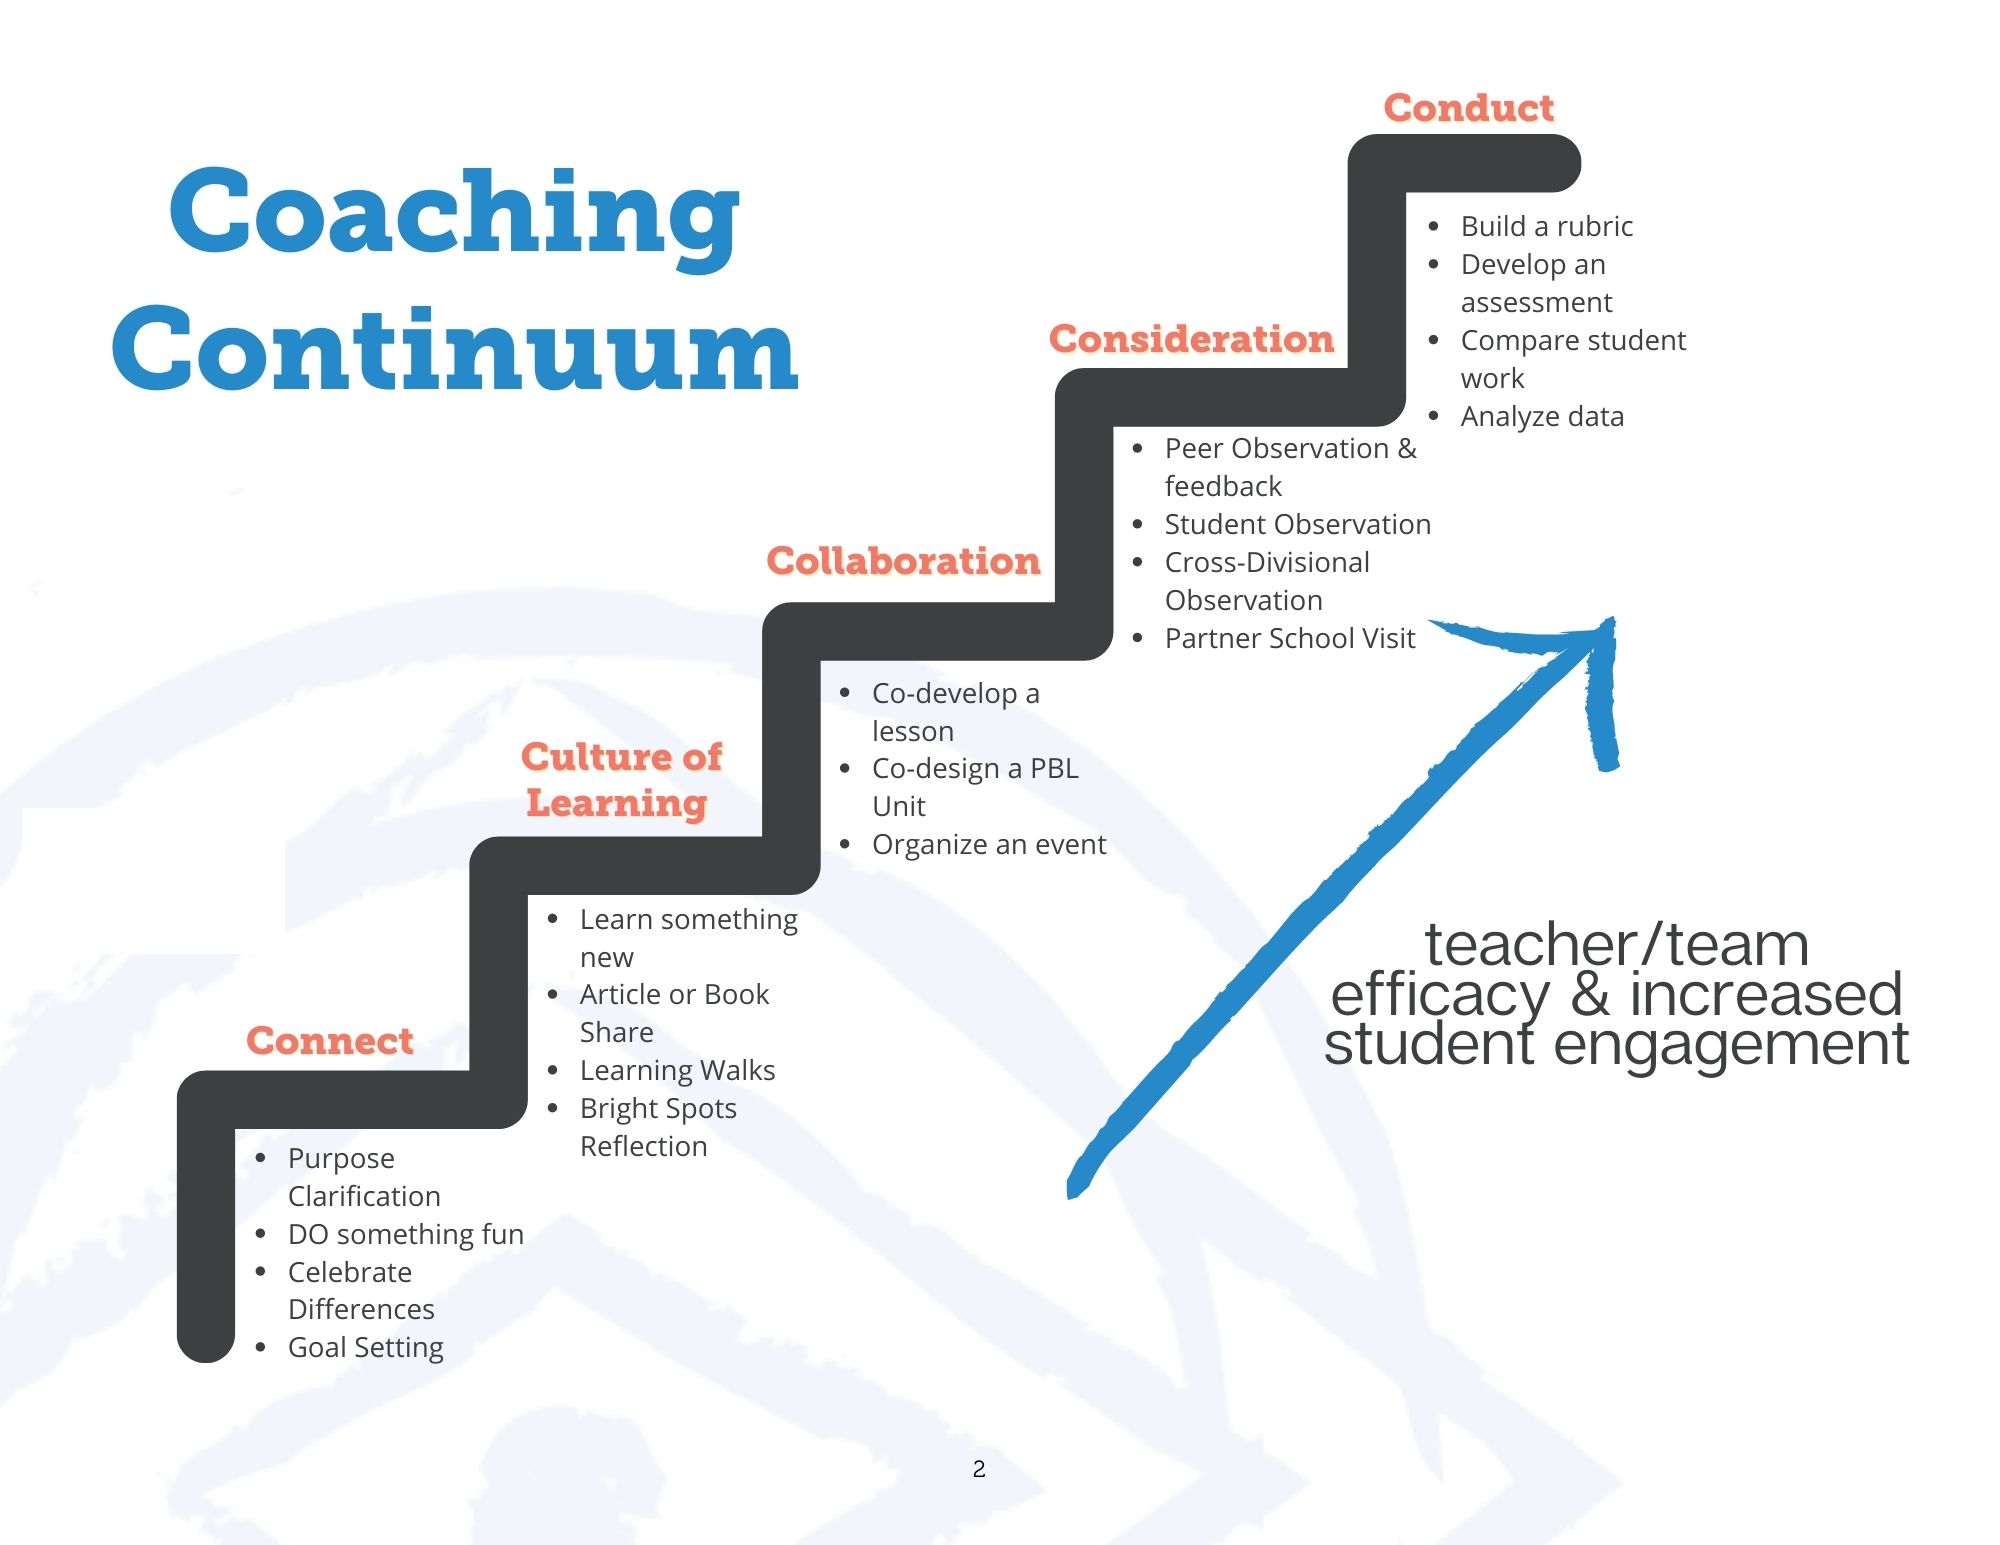 Coaching continuum